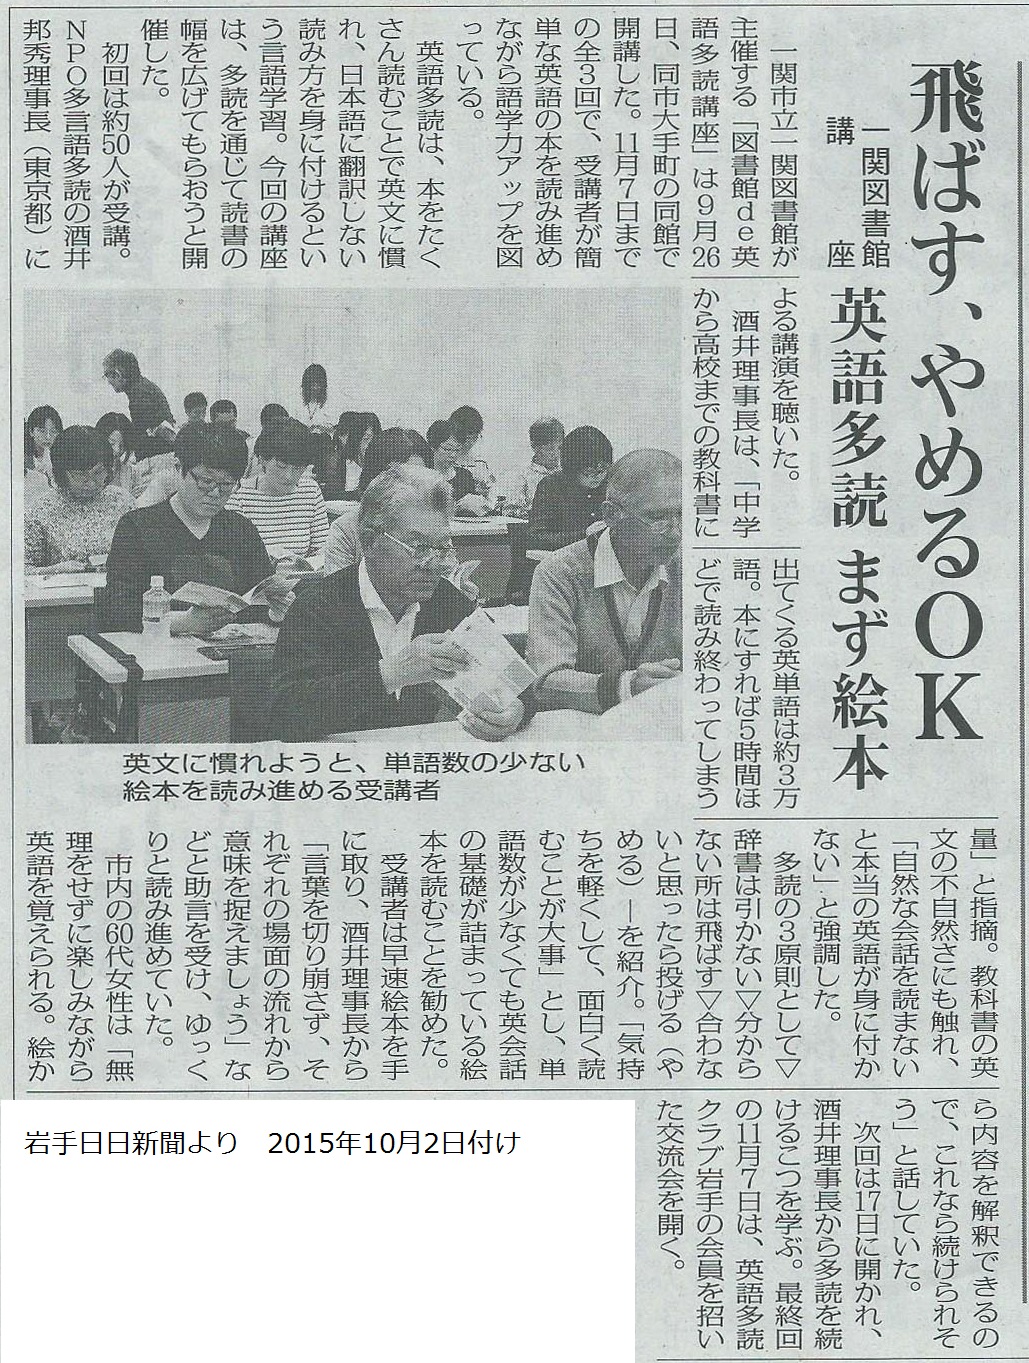 一関図書館開催 図書館de英語多読講座 が2015年10月2日 岩手日日新聞で紹介されました Npo多言語多読